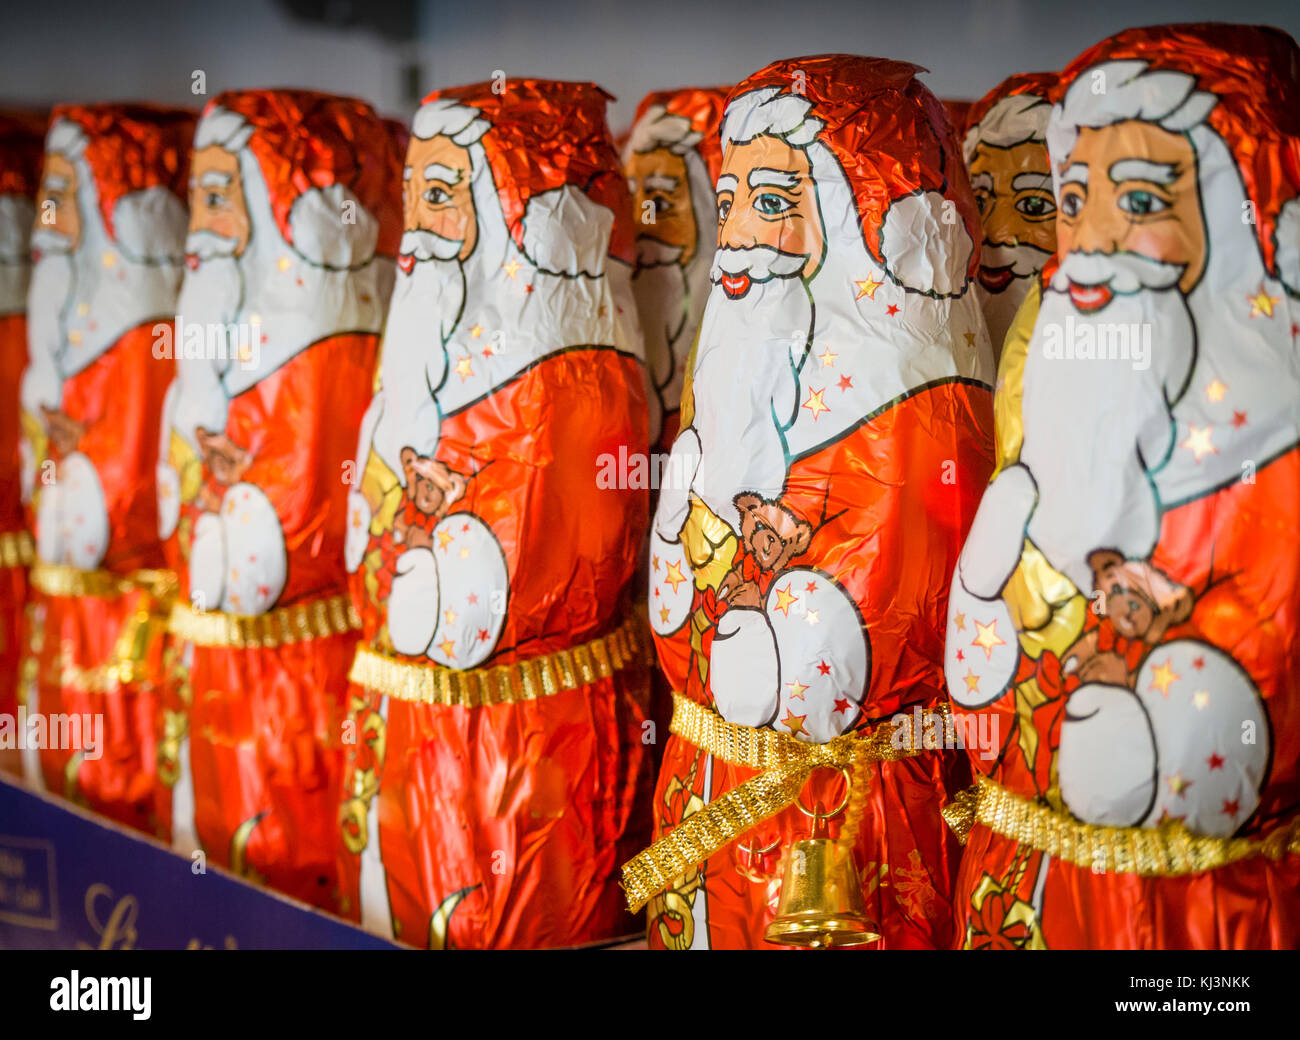 Zürich, Schweiz - 17 May 2017: Weniger als 6 Wochen vor Weihnachten, eine  Armee von Schokolade Weihnachtsmänner auf einem Regal gefüttert  Stockfotografie - Alamy